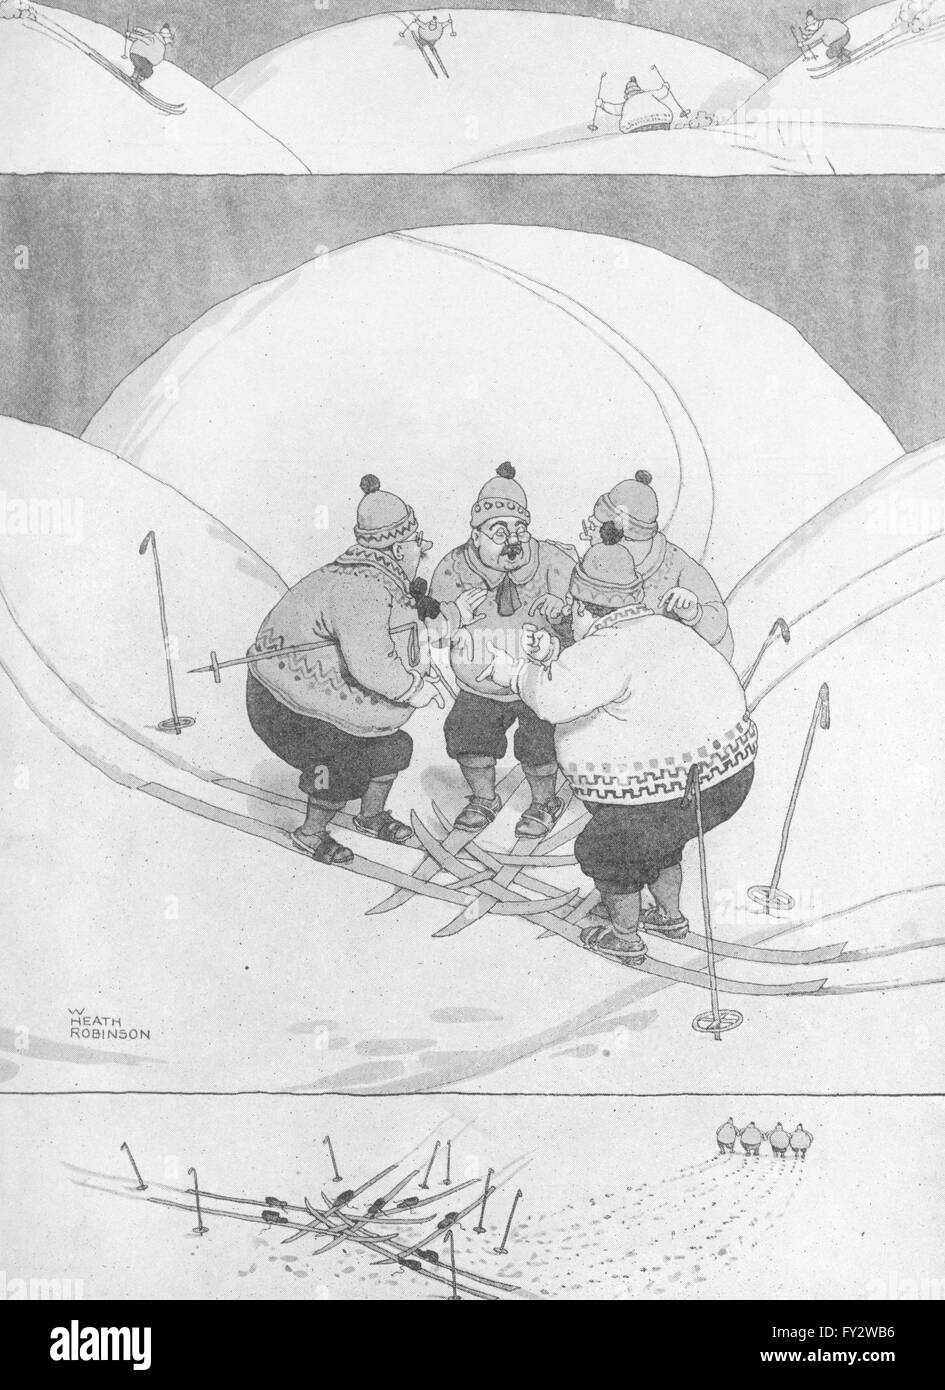 HEATH ROBINSON: La única manera de salir de una incómoda situación. Esquí, 1935 imprimir Foto de stock